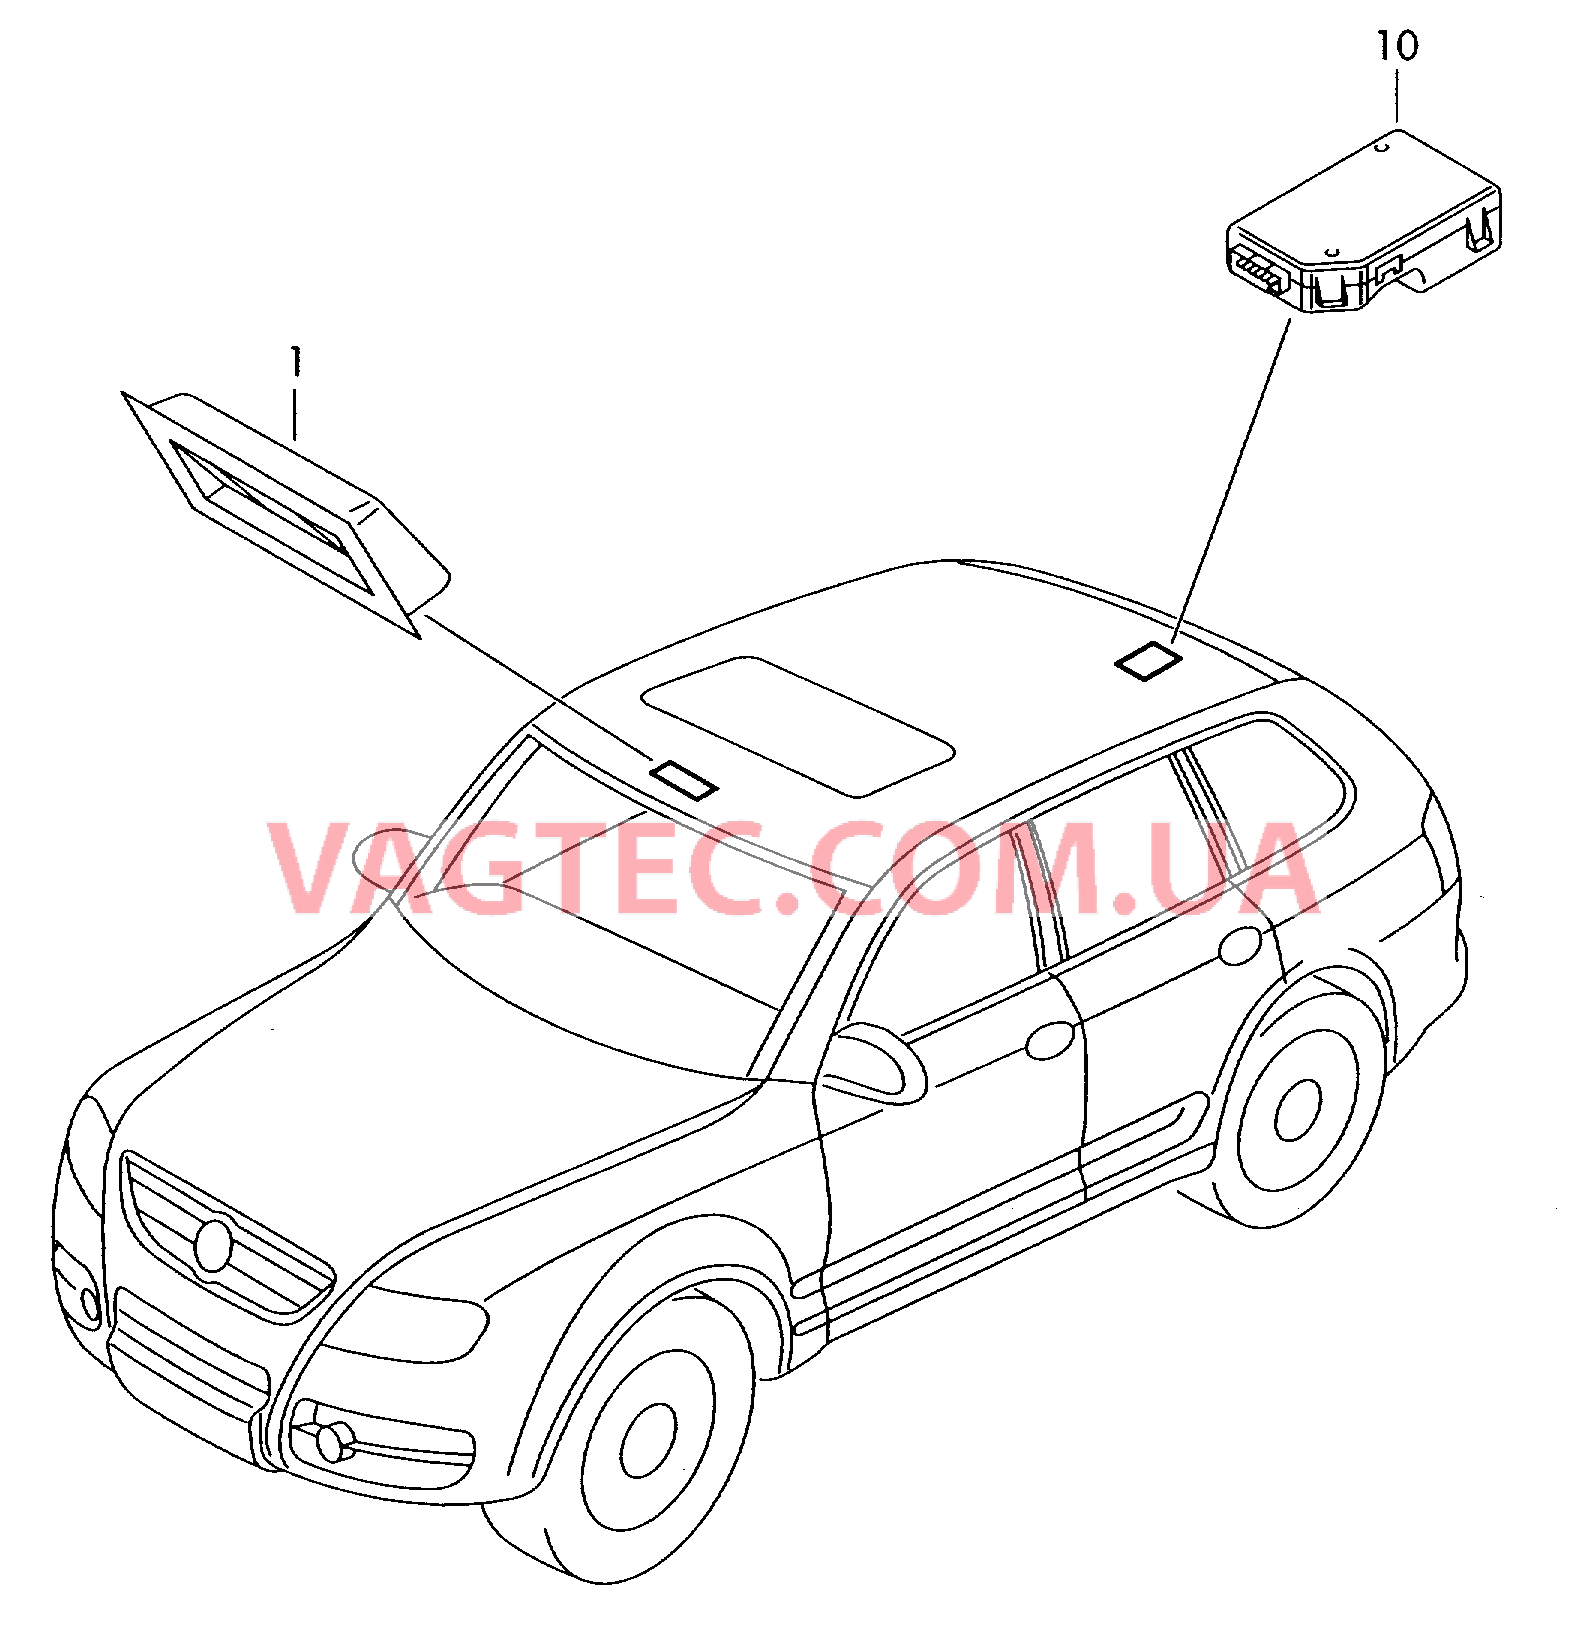 Панель управления и индикации для VW TOUAREG  Датчик магнитного поля для автомобилей с системой KOMPASS для VW TOUAREG   для VOLKSWAGEN Touareg 2003